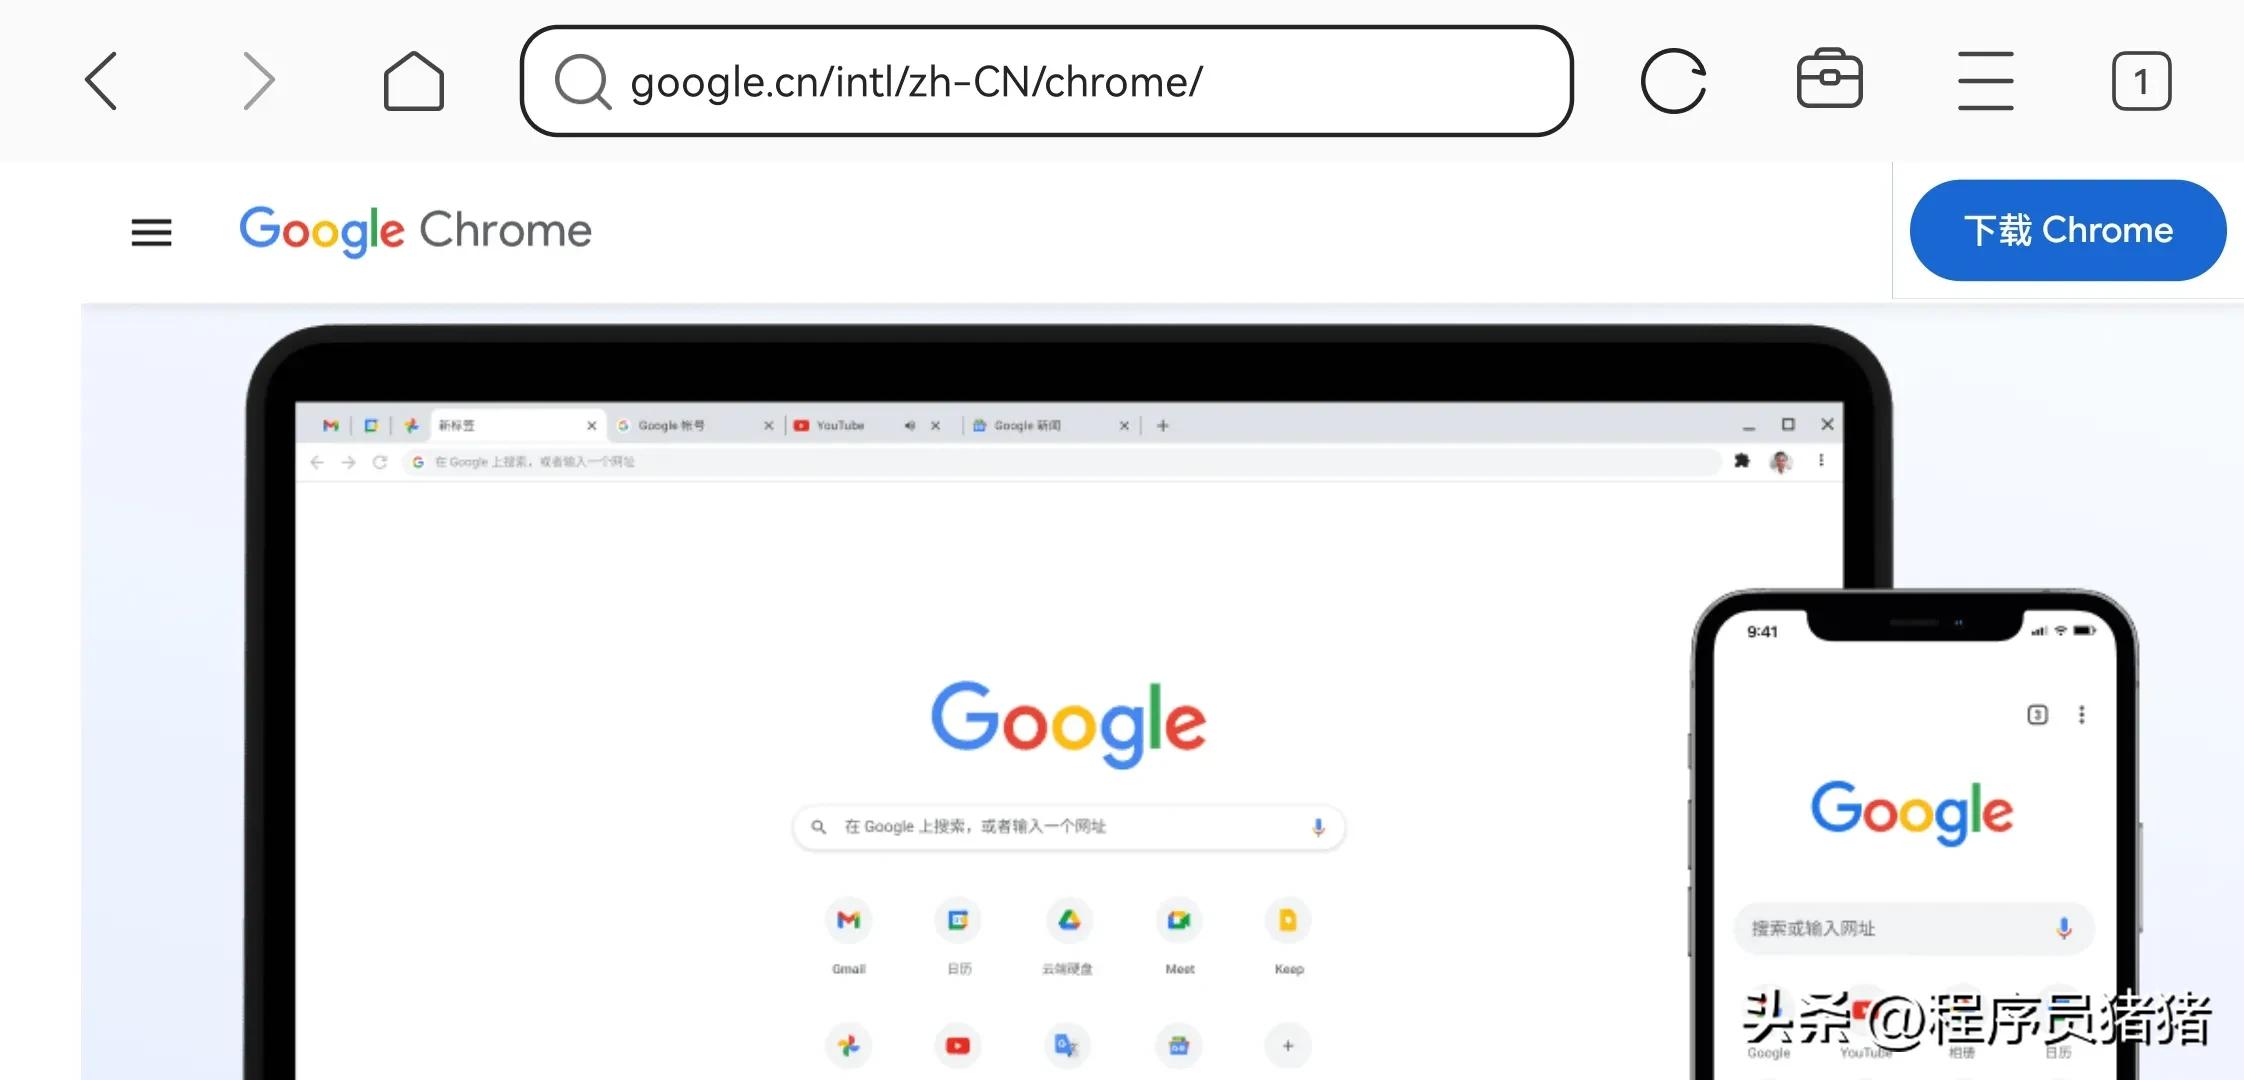 下载qq浏览器免费 谷歌浏览器(Chrome)官方网站下载地址